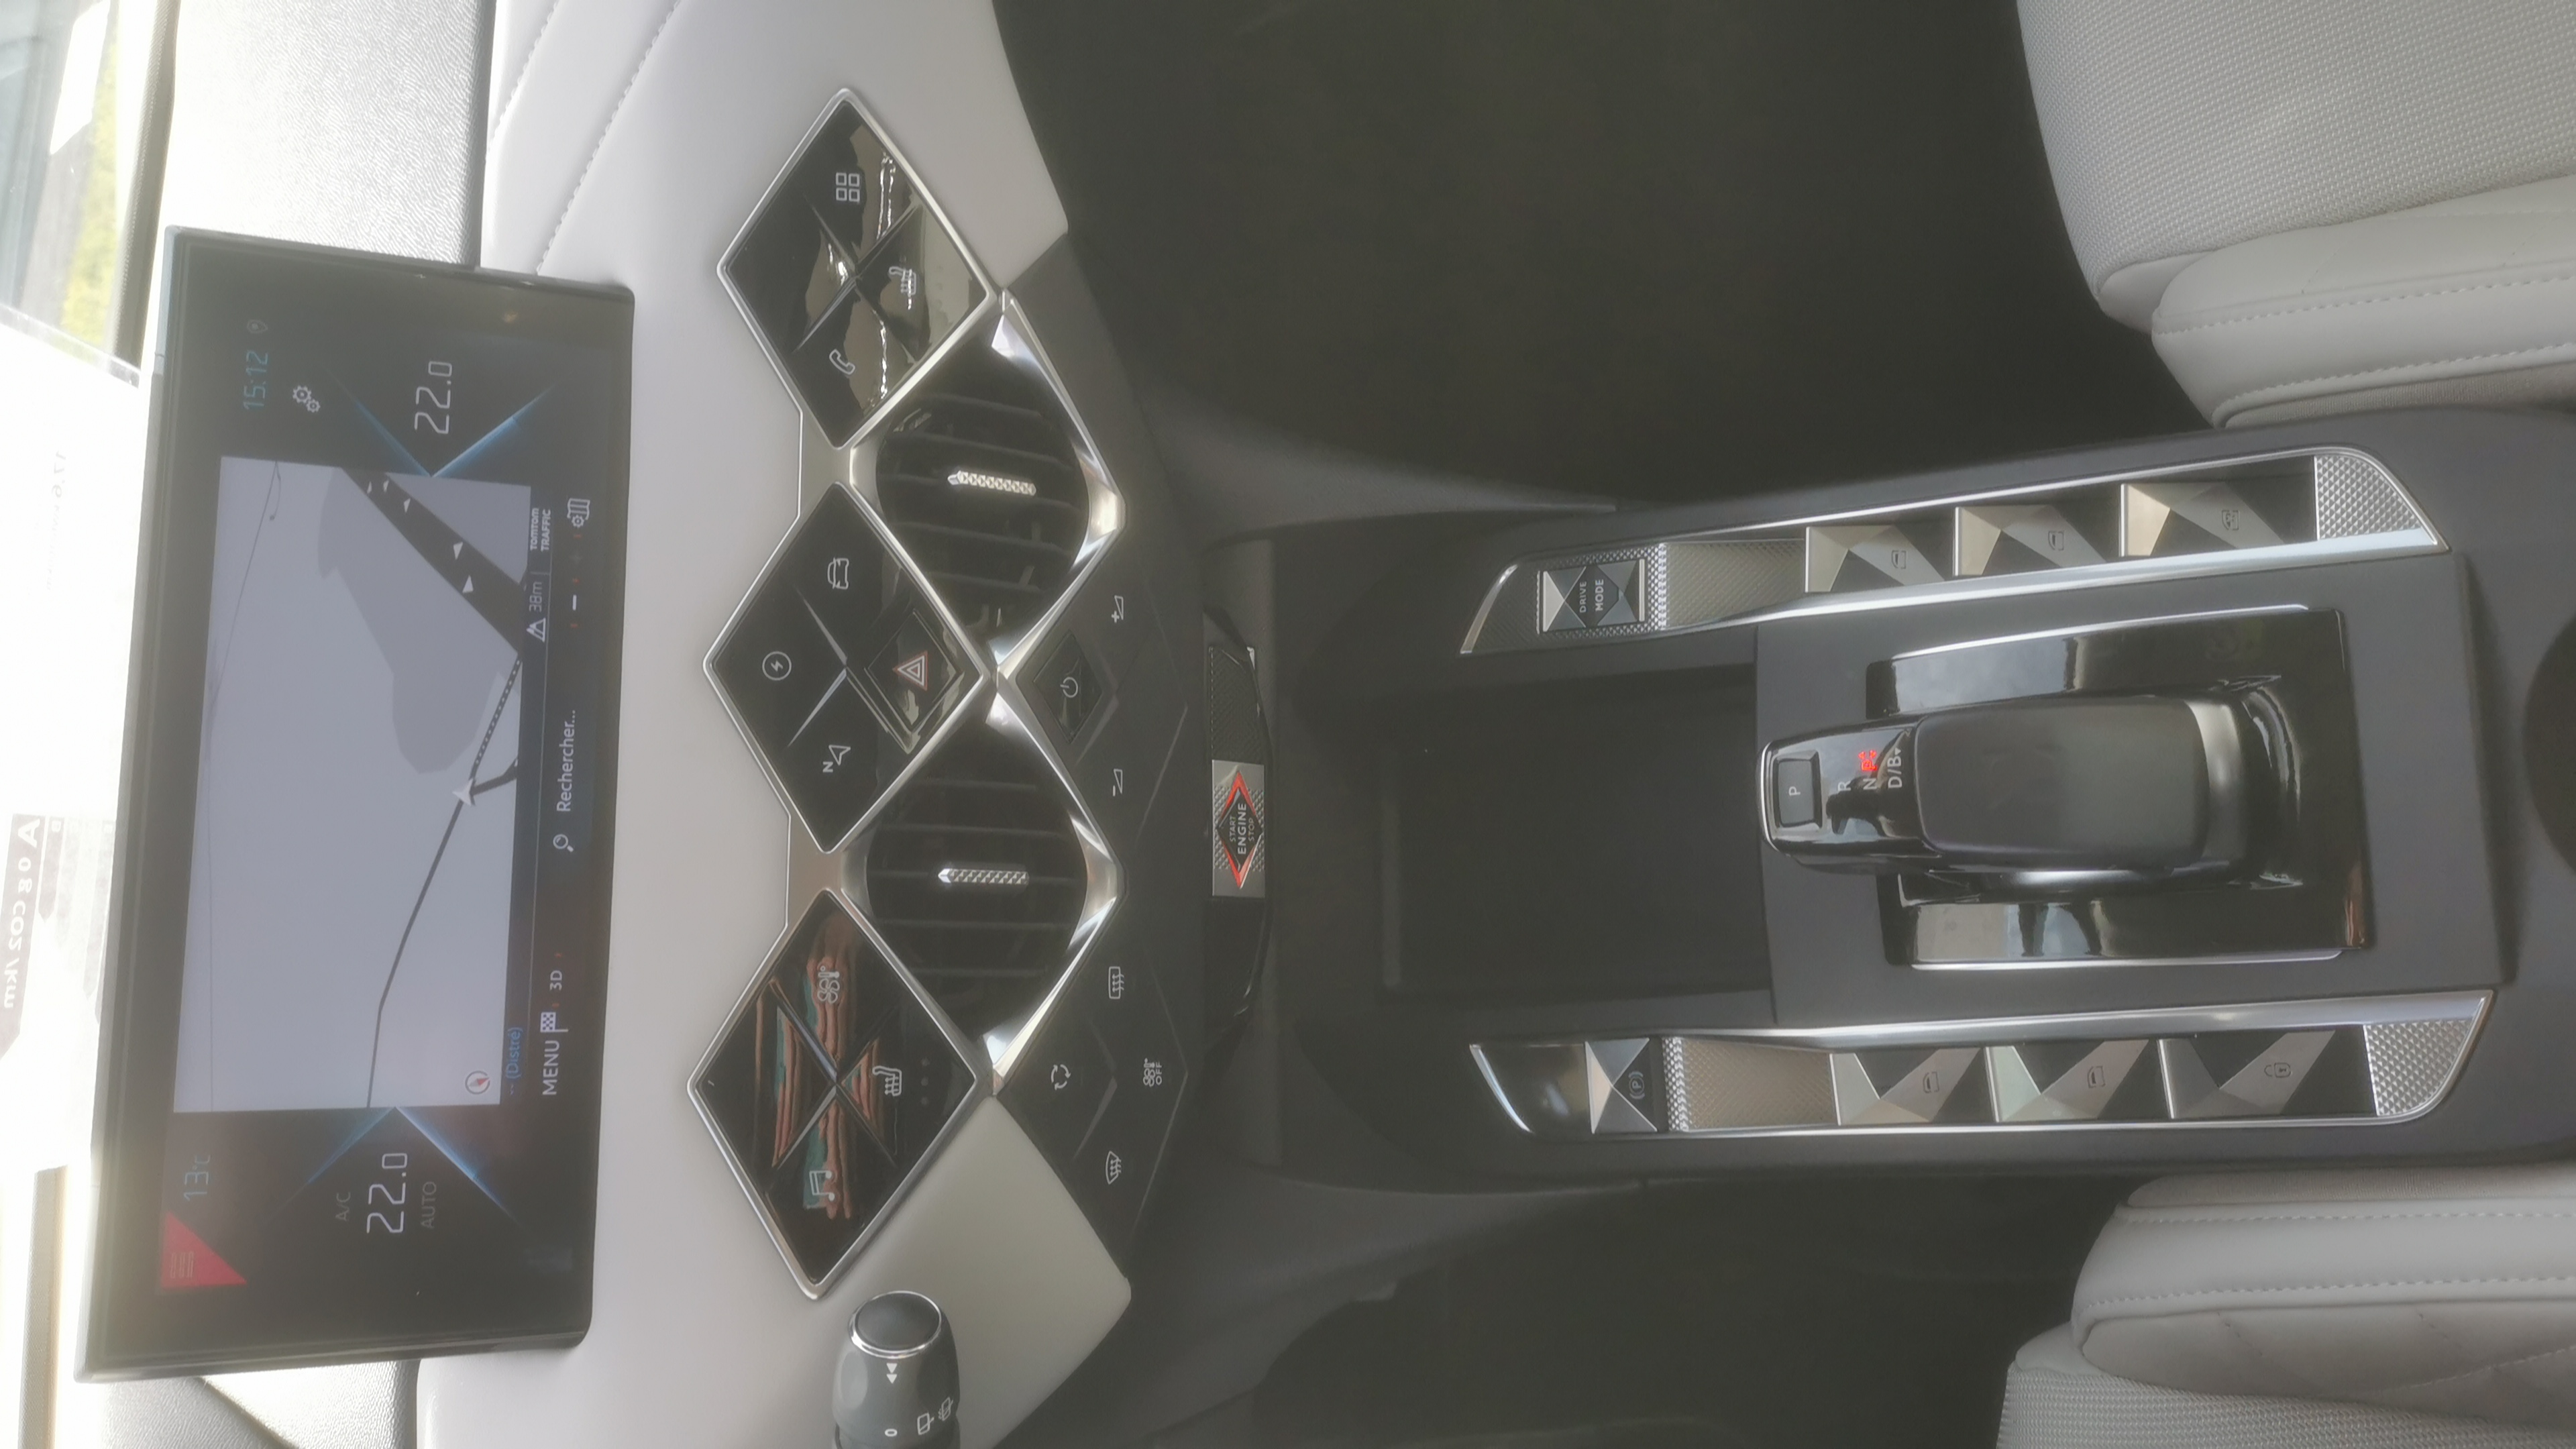 DS DS3 Crossback E-Tense La Première - Véhicule Occasion Océane Auto